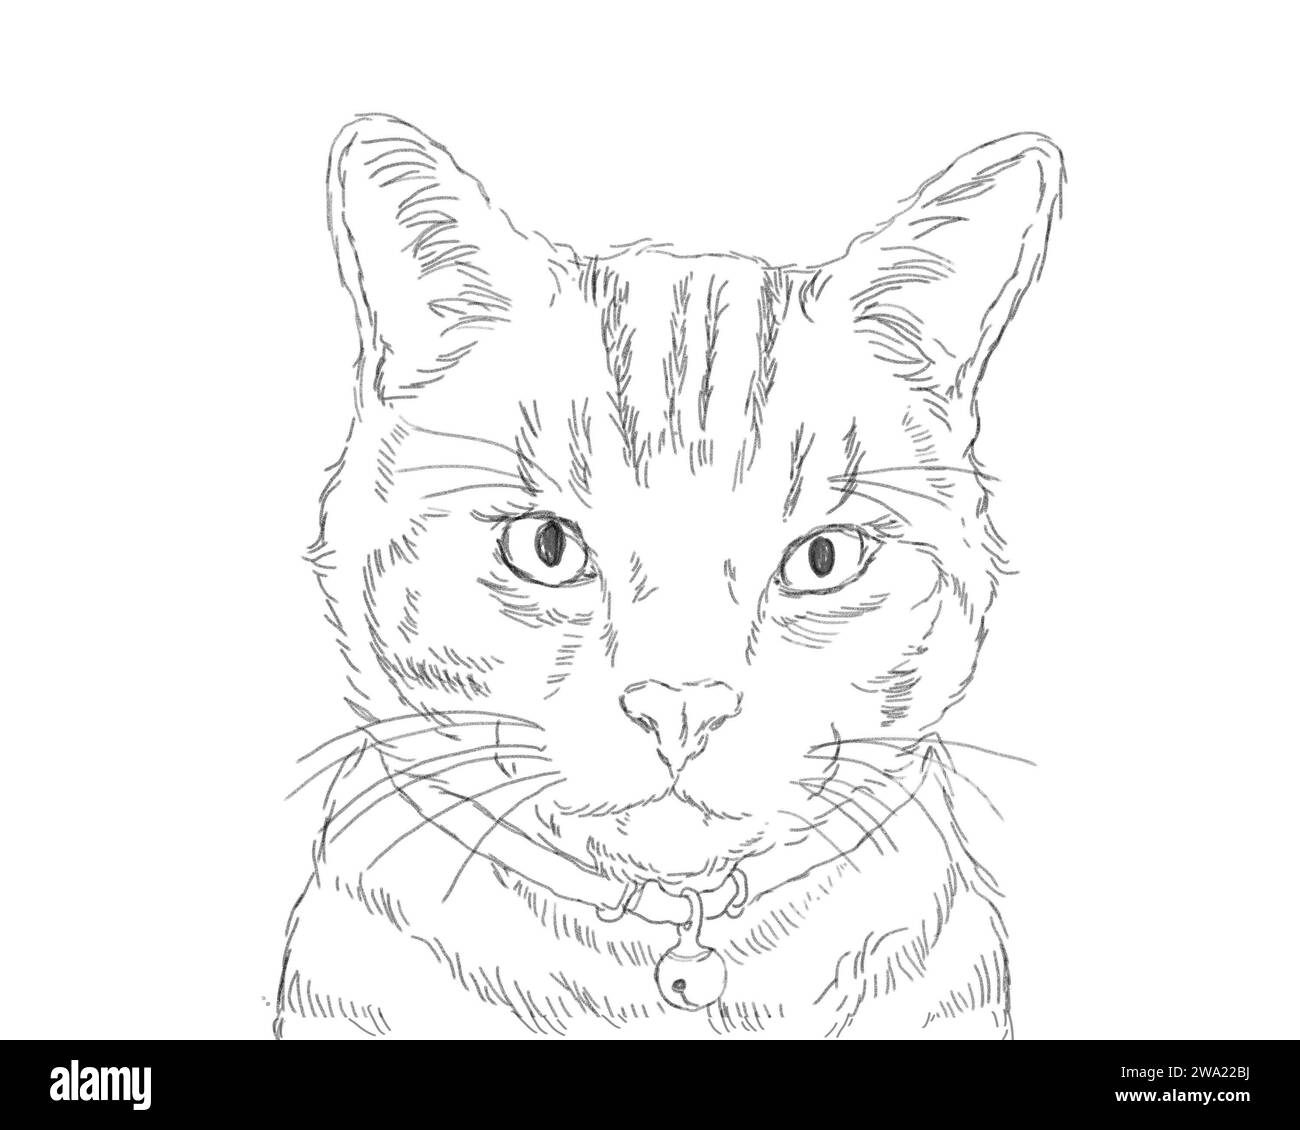 Mignon portrait de chat shorthair américain. Dessin d'esquisse en noir et blanc. Concept d'animal domestique. Banque D'Images